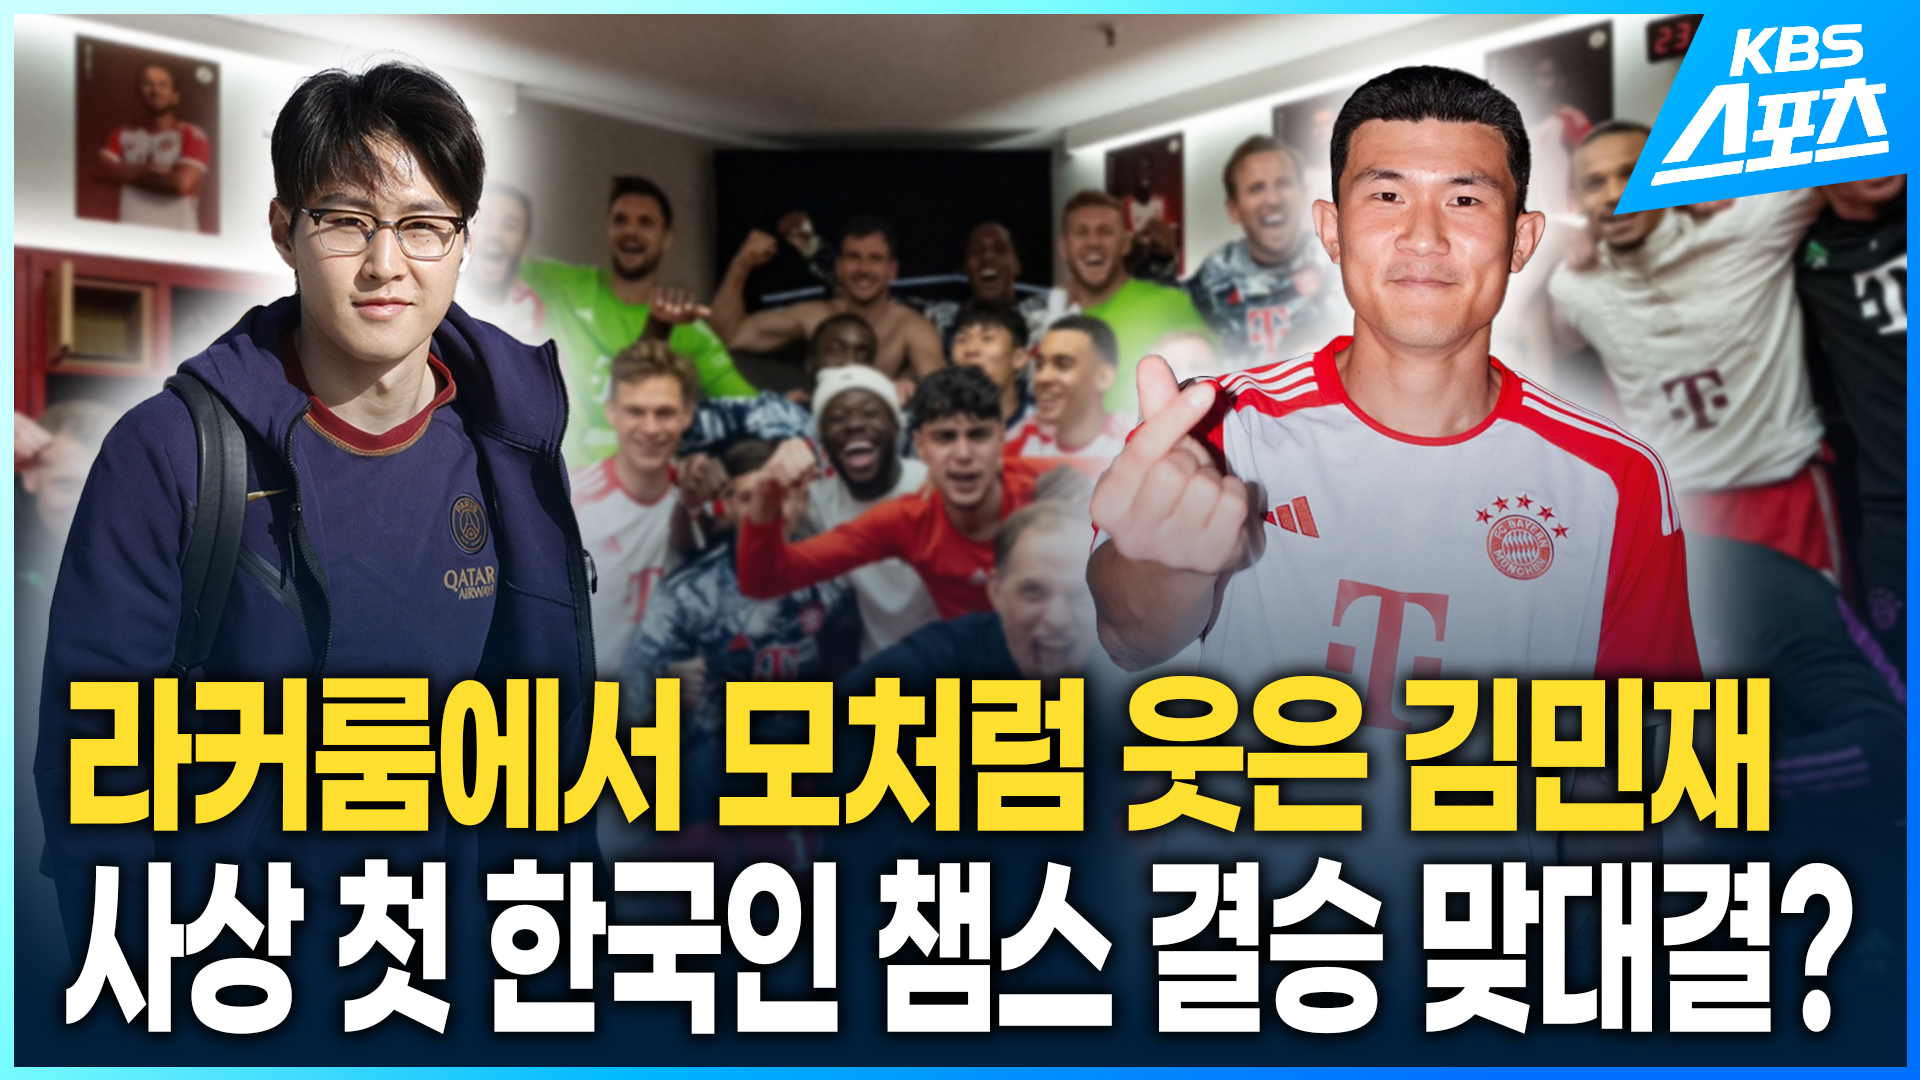 [영상] 모처럼 활짝 웃은 김민재…사상 첫 한국인 챔스 결승 맞대결 성사되나?